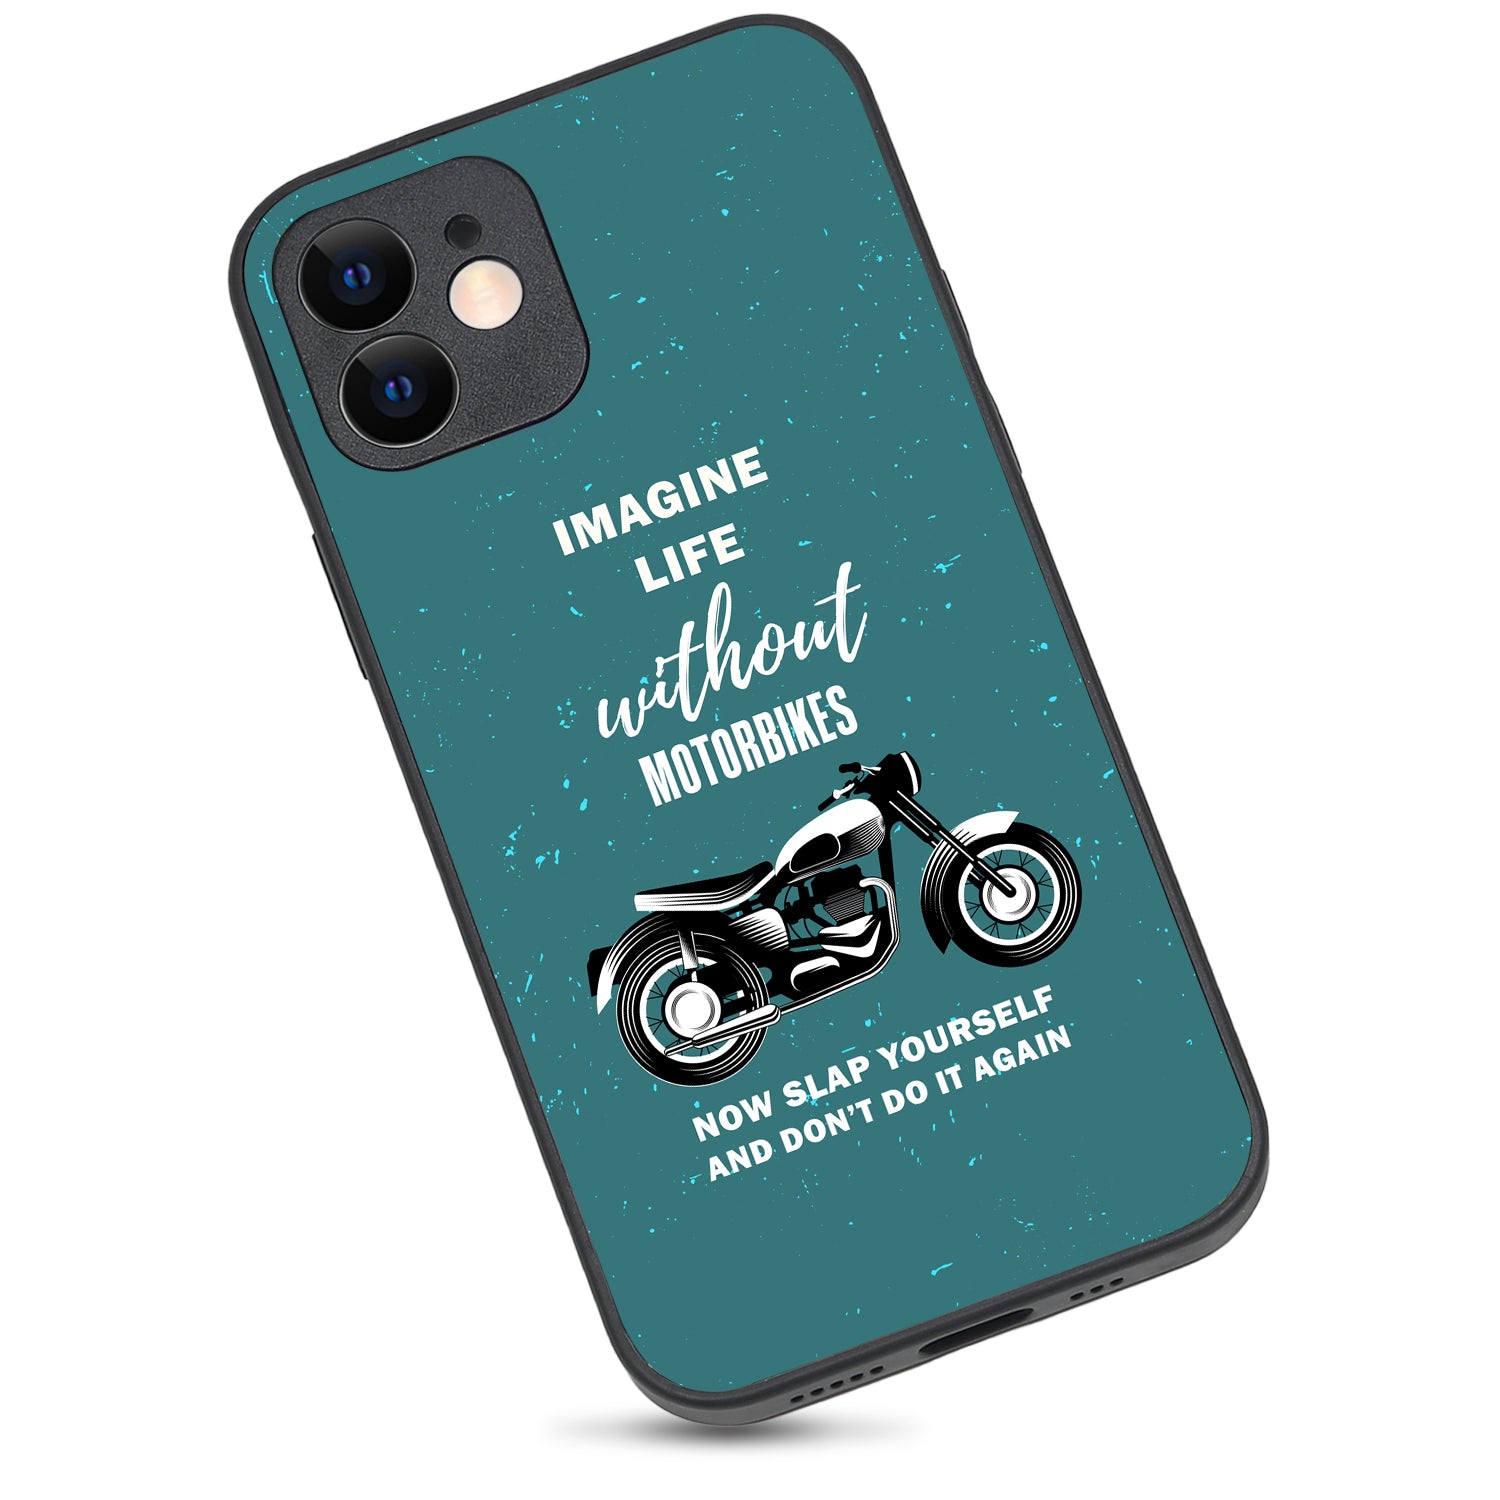 Imagine Life Without MotorbikeBike iPhone 12 Case